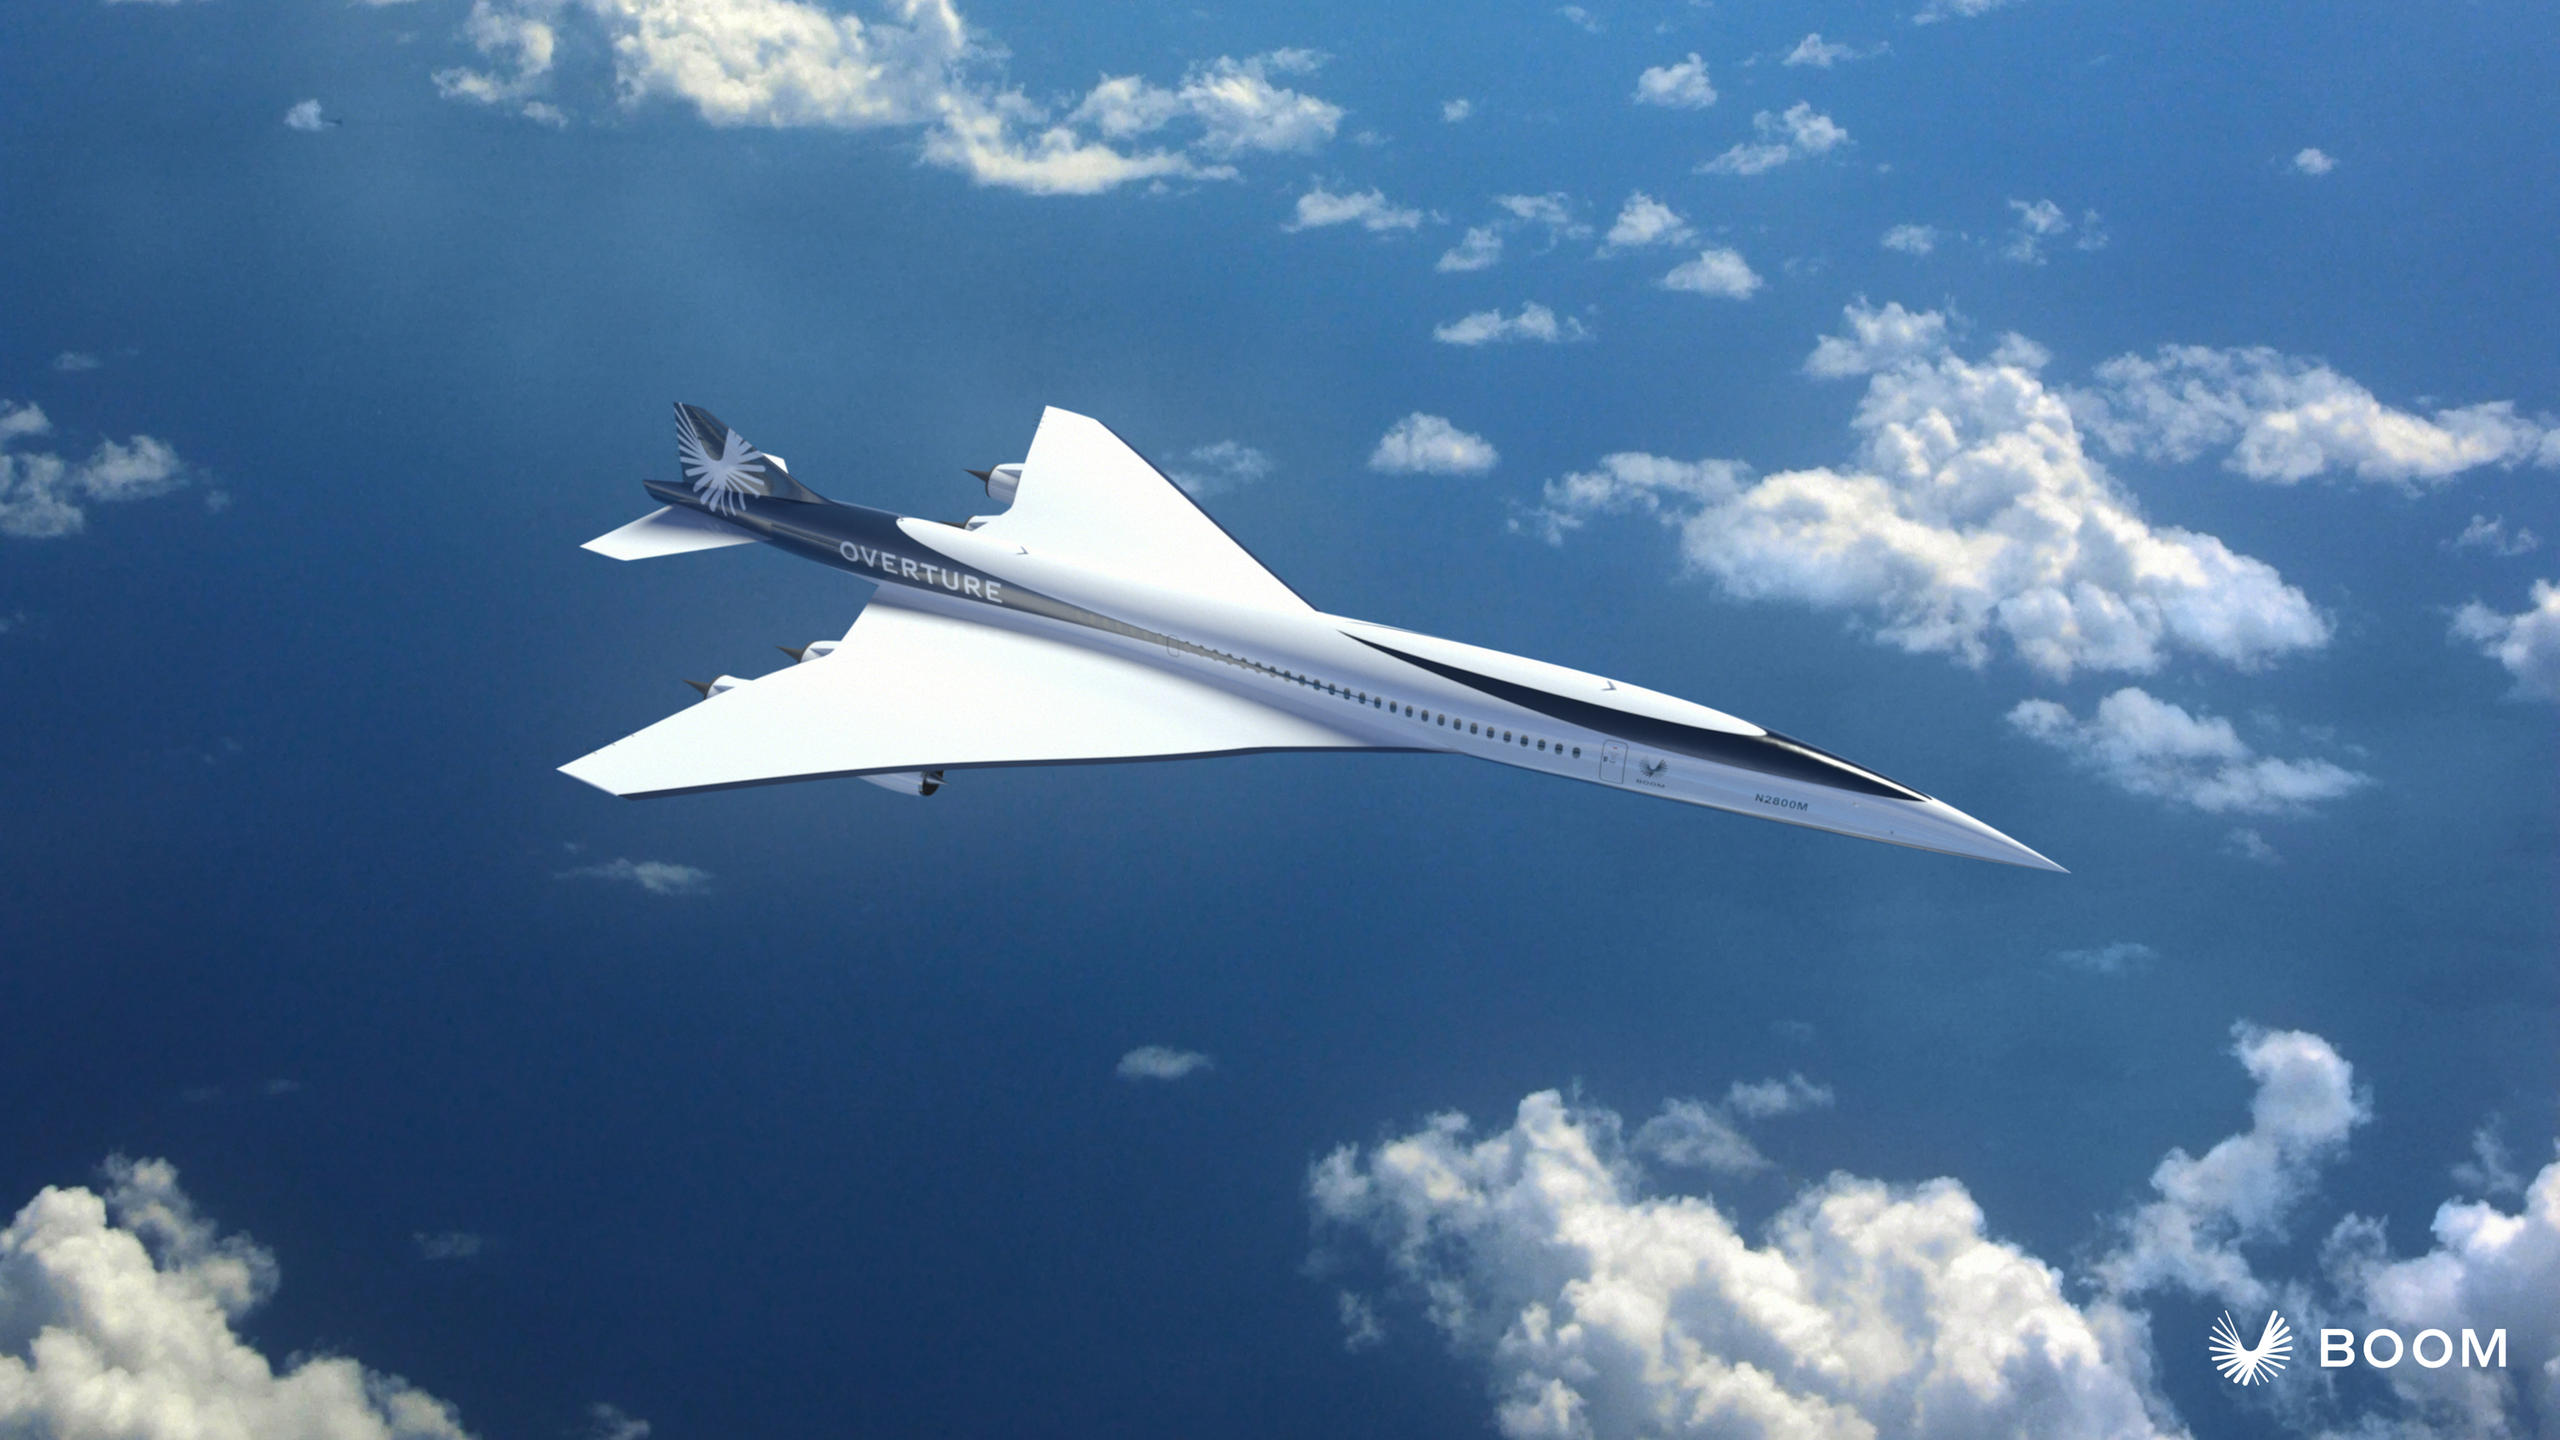 制造Overture高超音速喷气飞机的Boom公司在筹资工作中遥遥领先